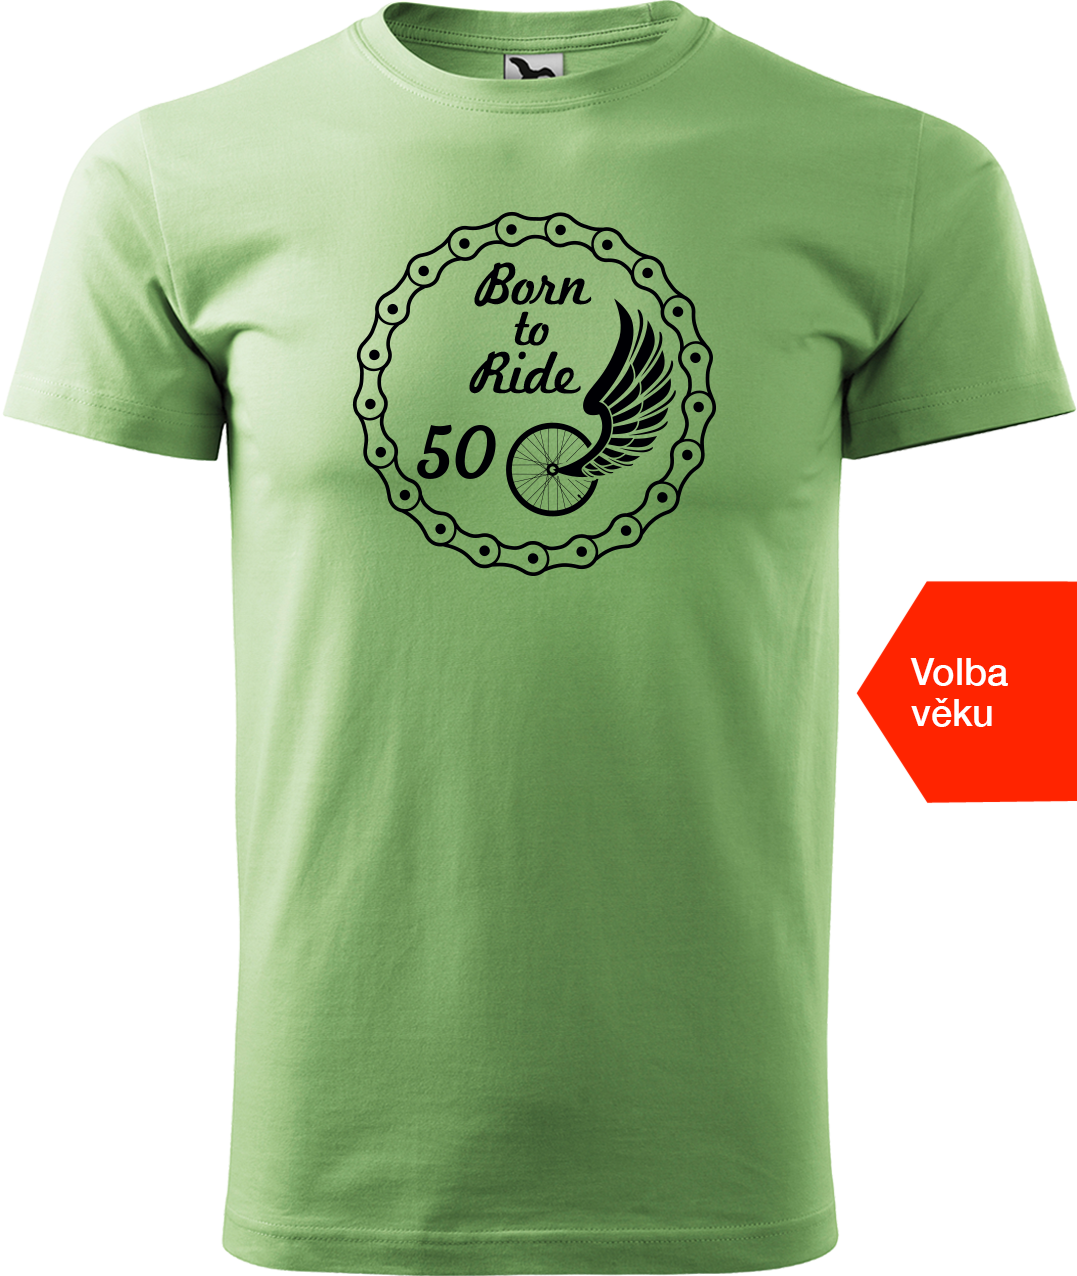 Pánské tričko pro cyklistu s věkem - Born to Ride (wings) Velikost: 4XL, Barva: Trávově zelená (39)